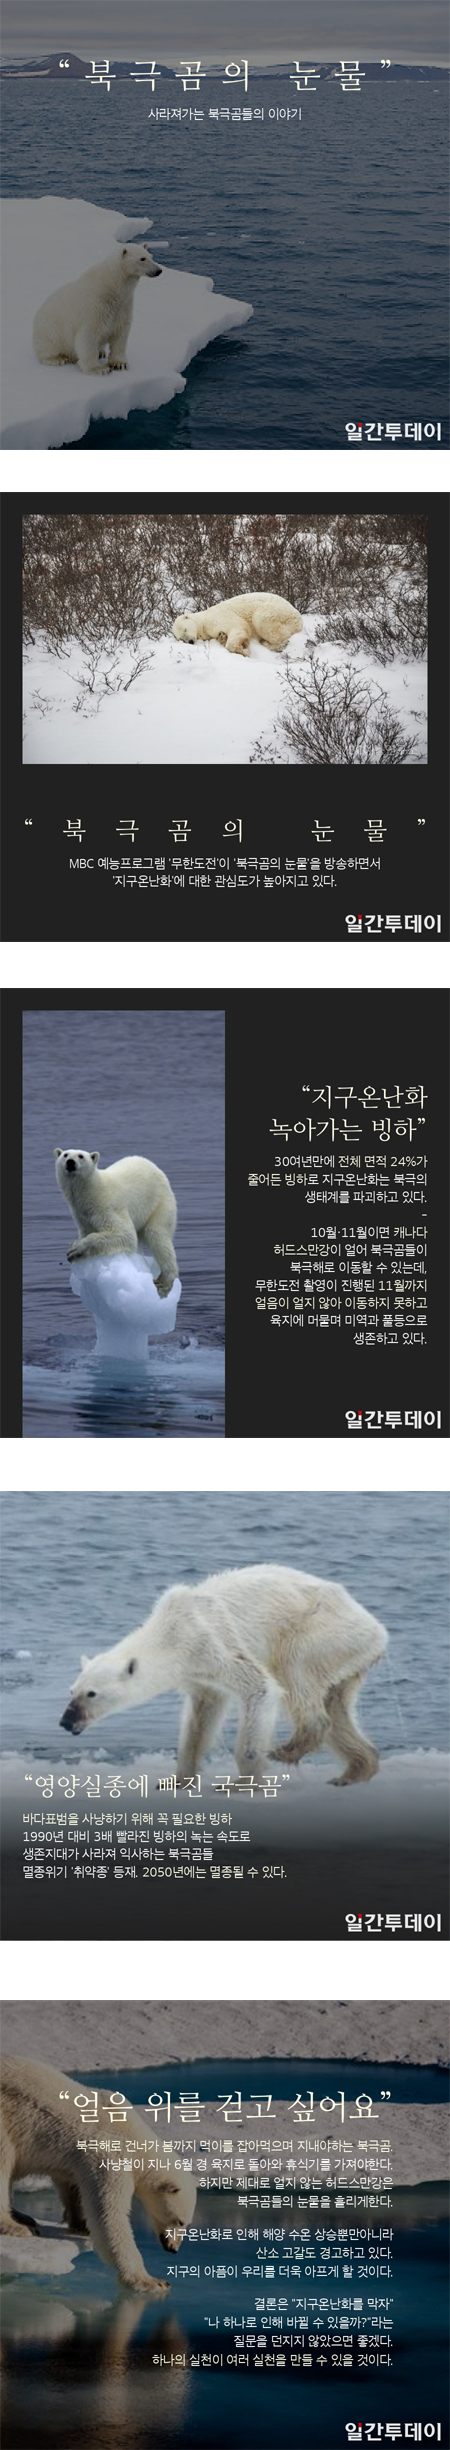 눈물 북극곰 의 [KISTI 과학향기]북극곰의